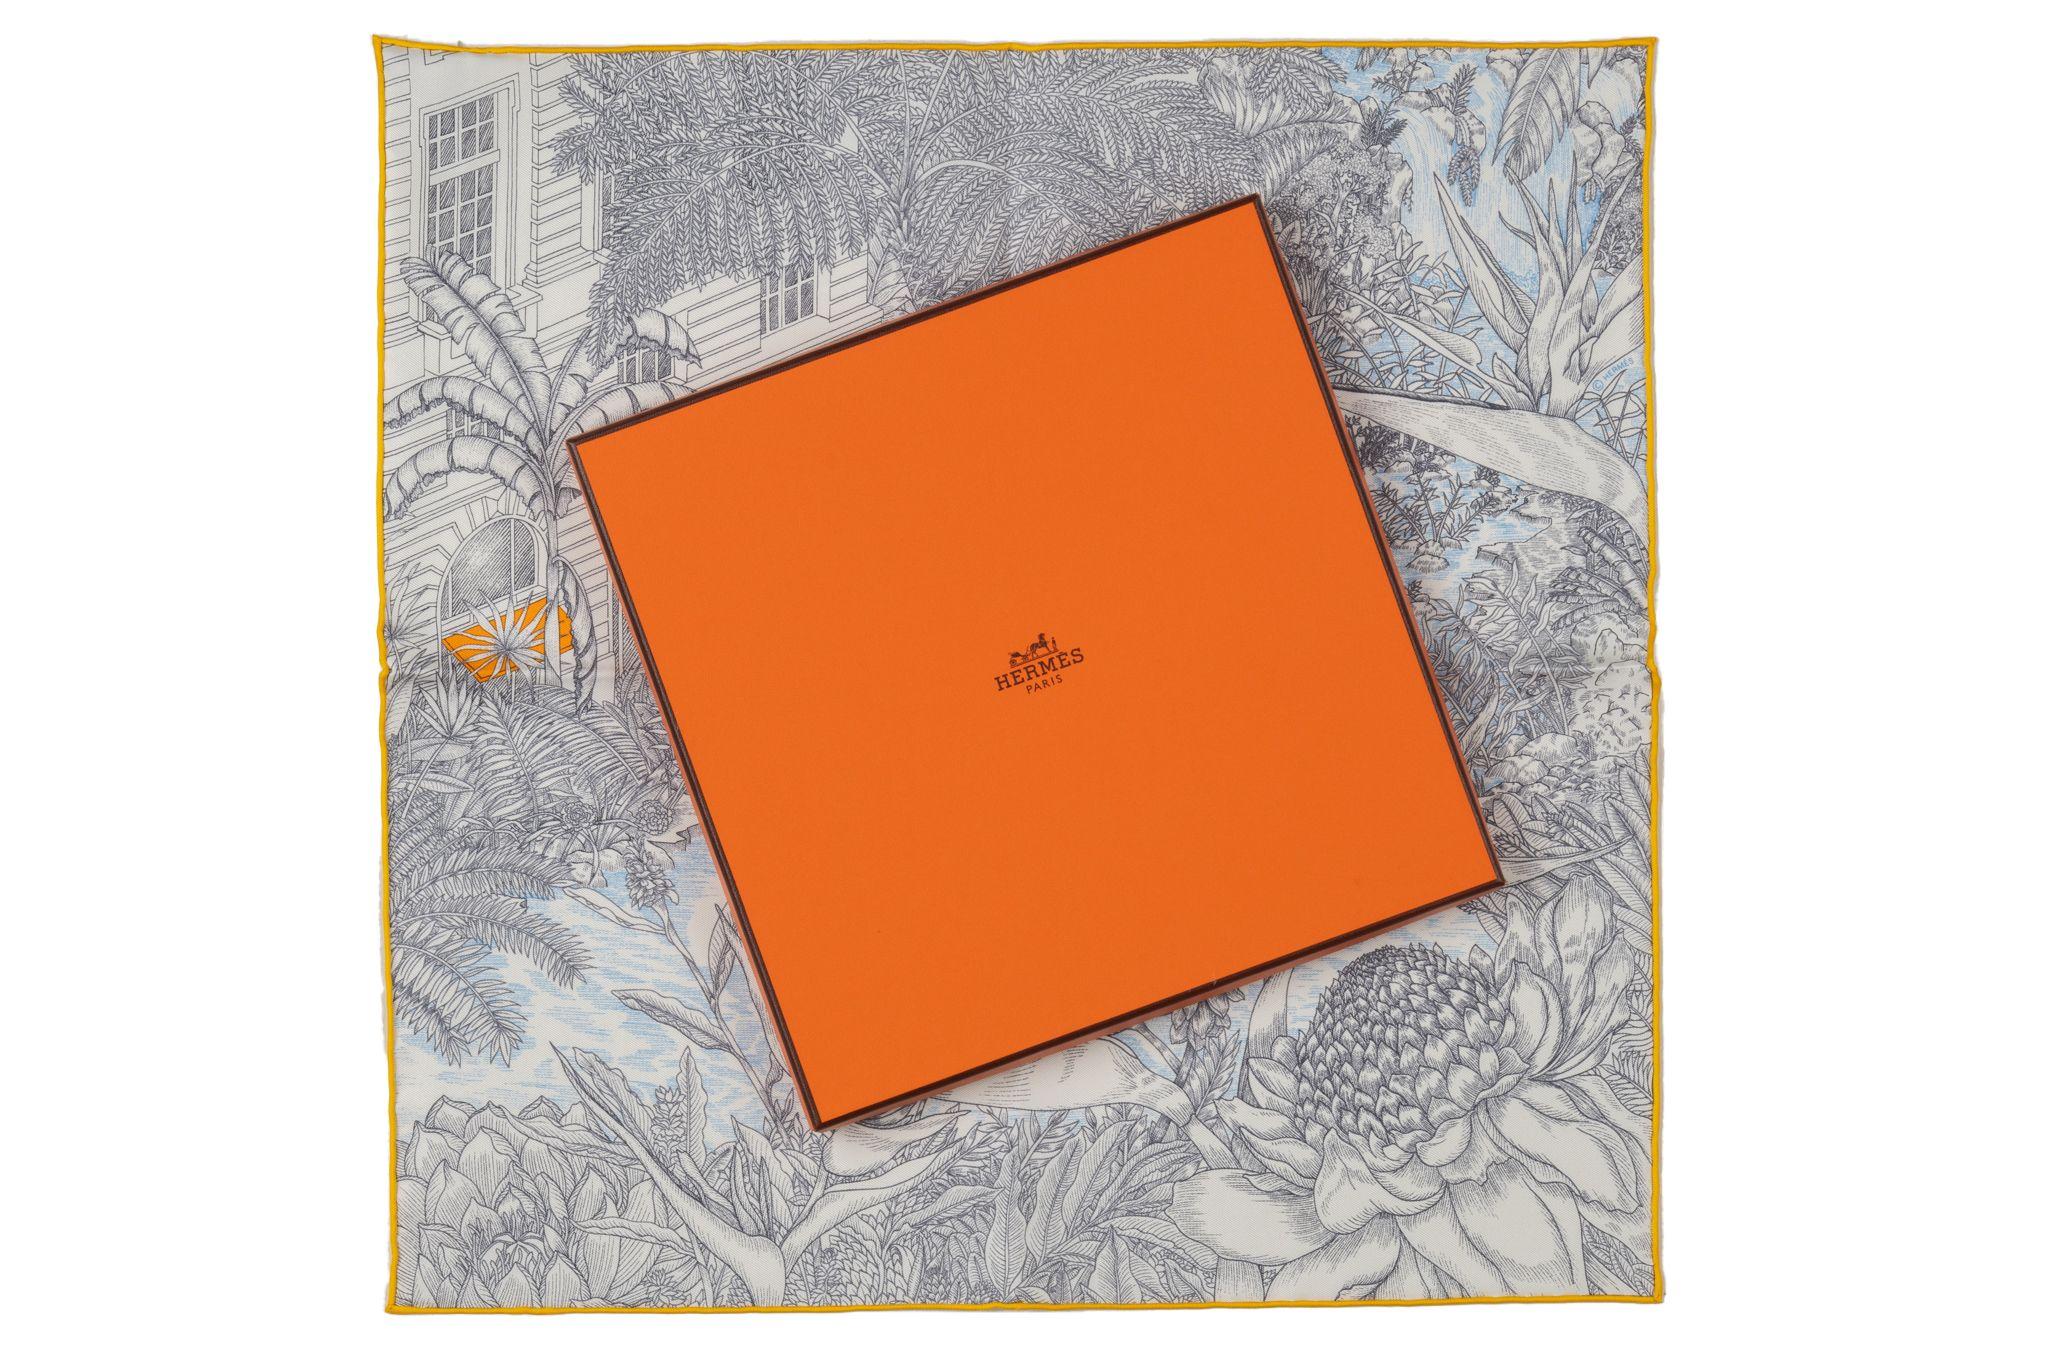 Hermès brand new in box tropical garden anthracite silk gavroche. Bords roulés à la main.